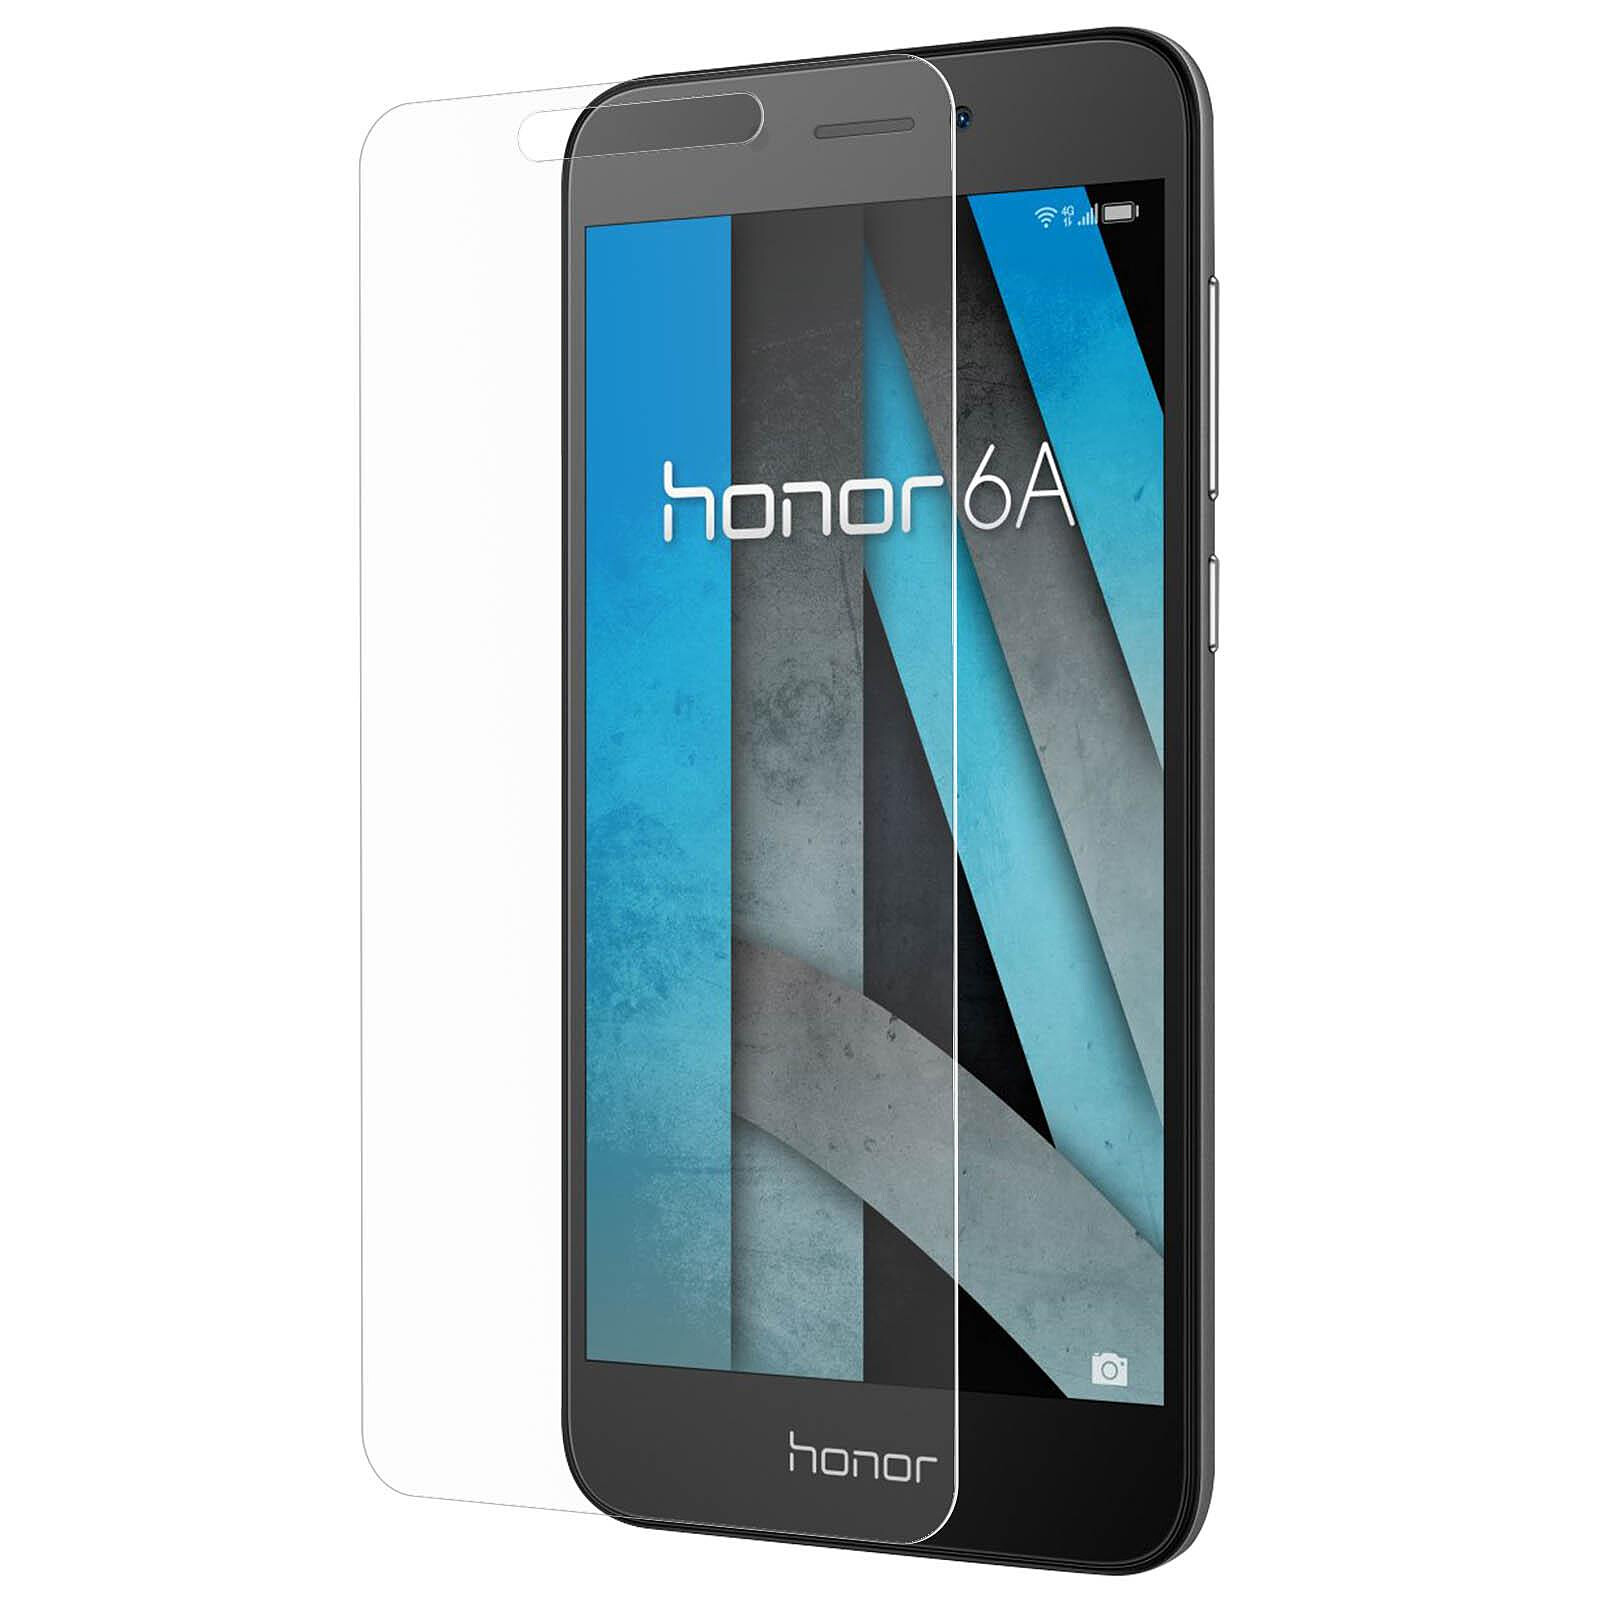 Huawei honor 6a. Смартфон Honor 6. Honor 6a 16gb Grey. Смартфон Honor 6a 2/16gb. Huawei Honor 6a 16 GB.